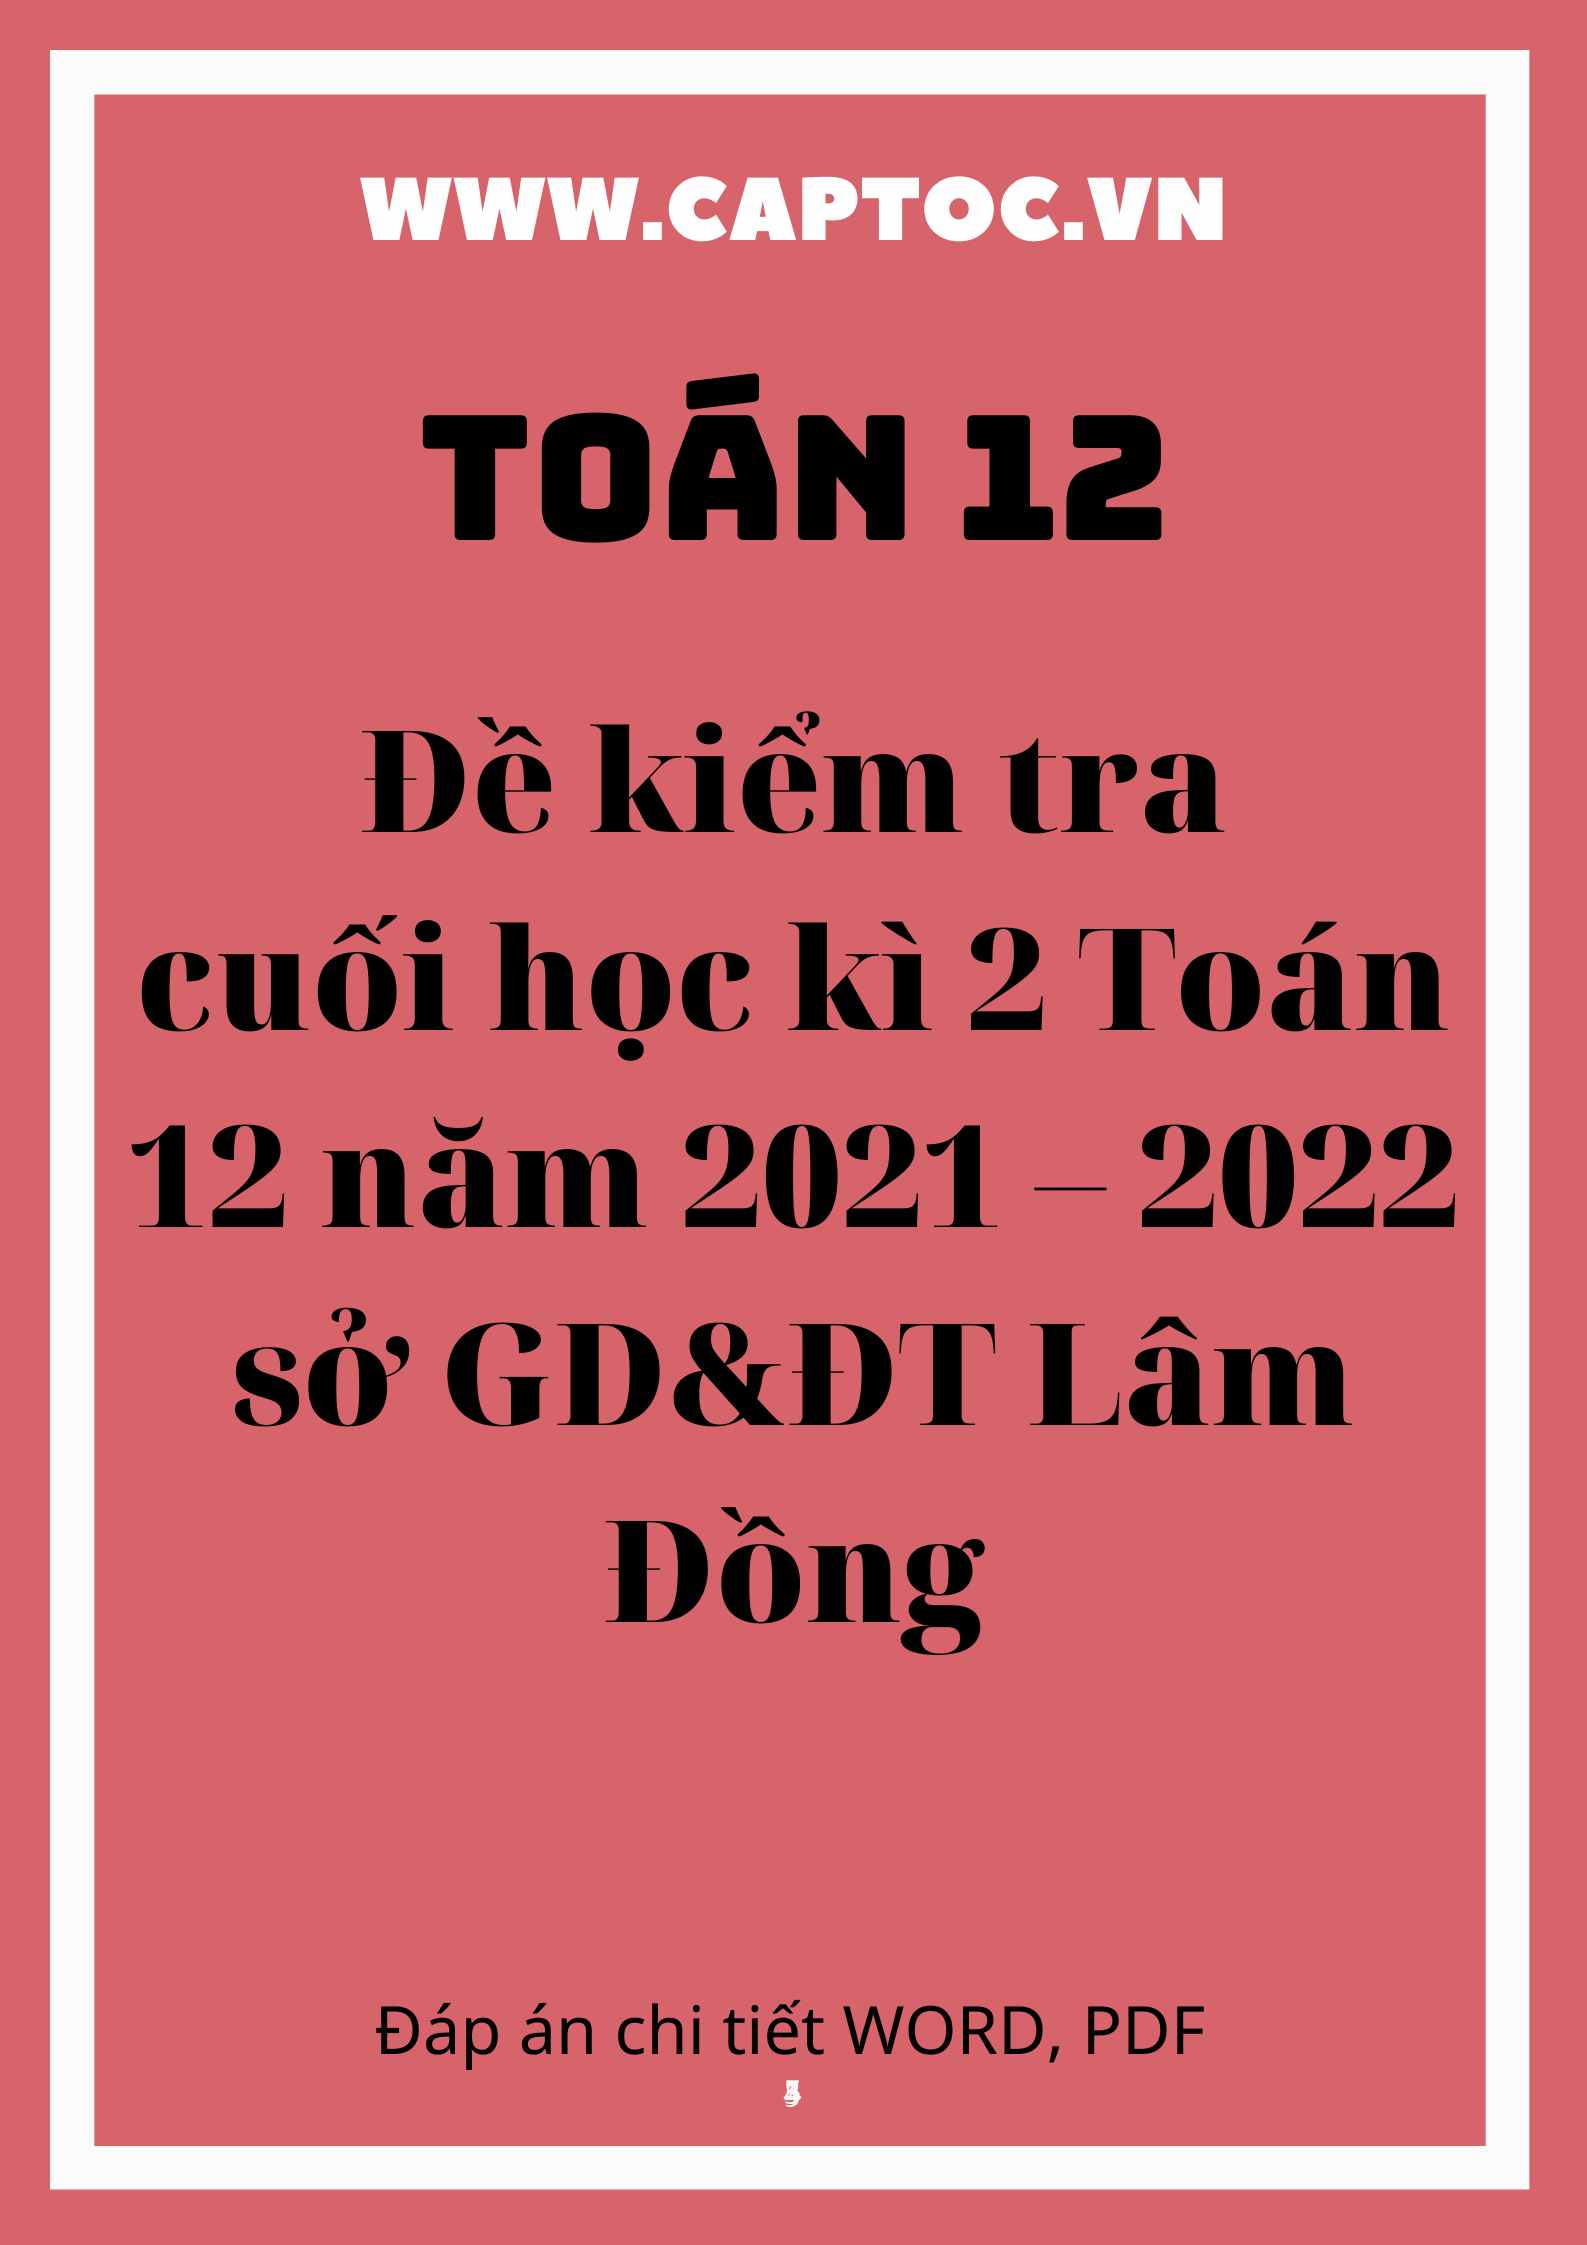 Đề kiểm tra cuối học kì 2 Toán 12 năm 2021 – 2022 sở GD&ĐT Lâm Đồng